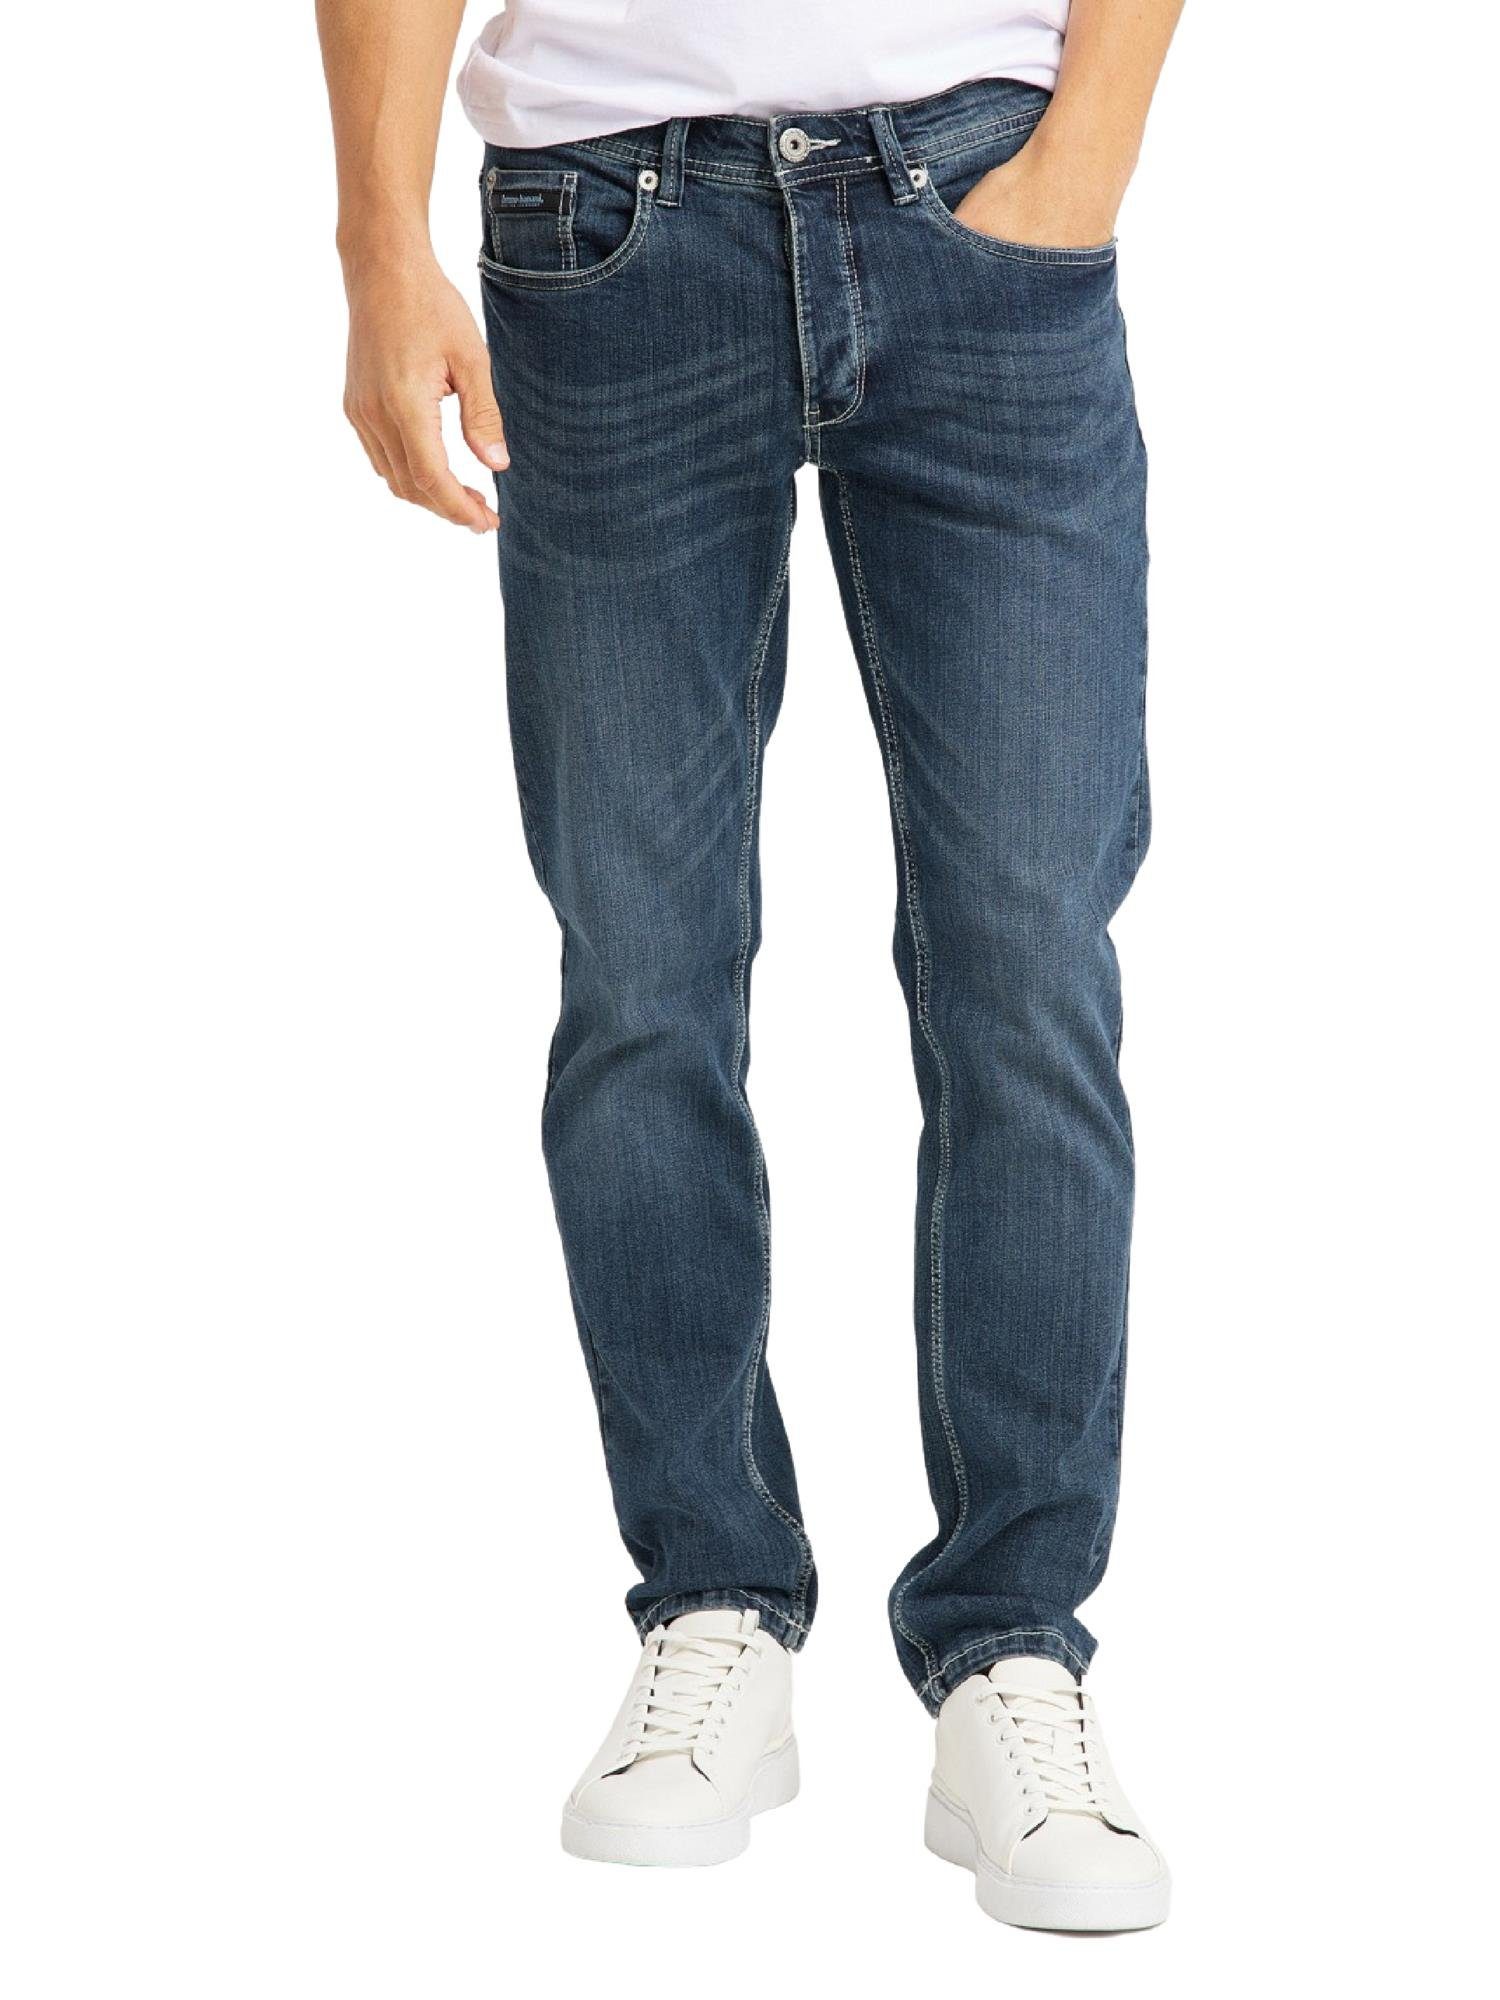 Bruno Banani 5-Pocket-Jeans DEAVER 30W32L